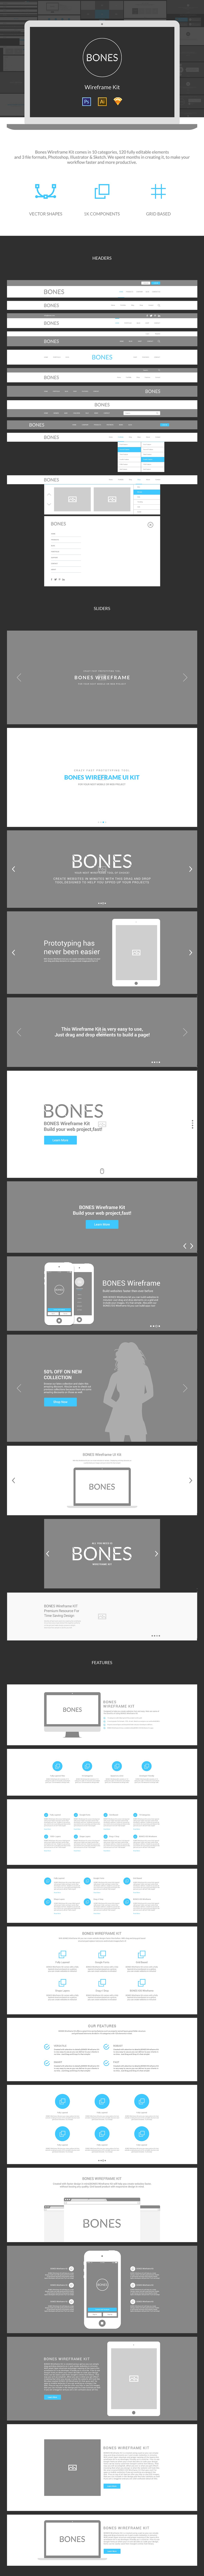 网页设计线框图素材包 Bones Wireframe Kit插图(4)